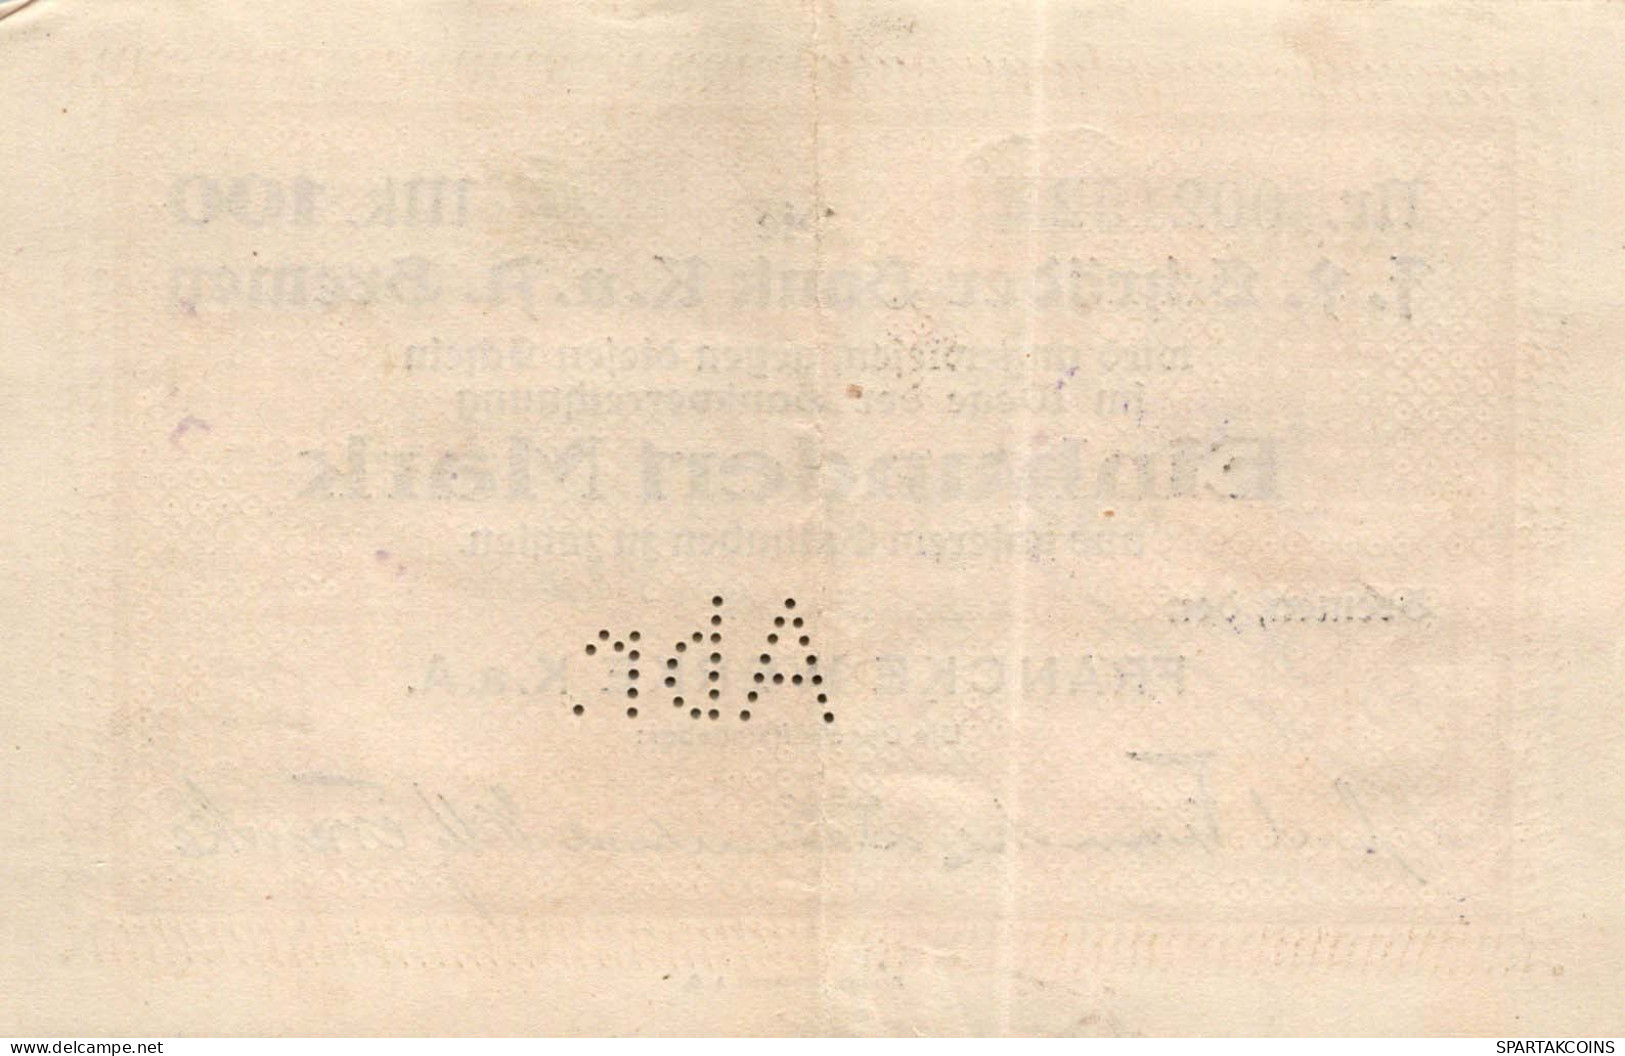 100 MARK 1923 Stadt BREMEN Bremen UNC DEUTSCHLAND Notgeld Papiergeld Banknote #PK753 - [11] Emisiones Locales